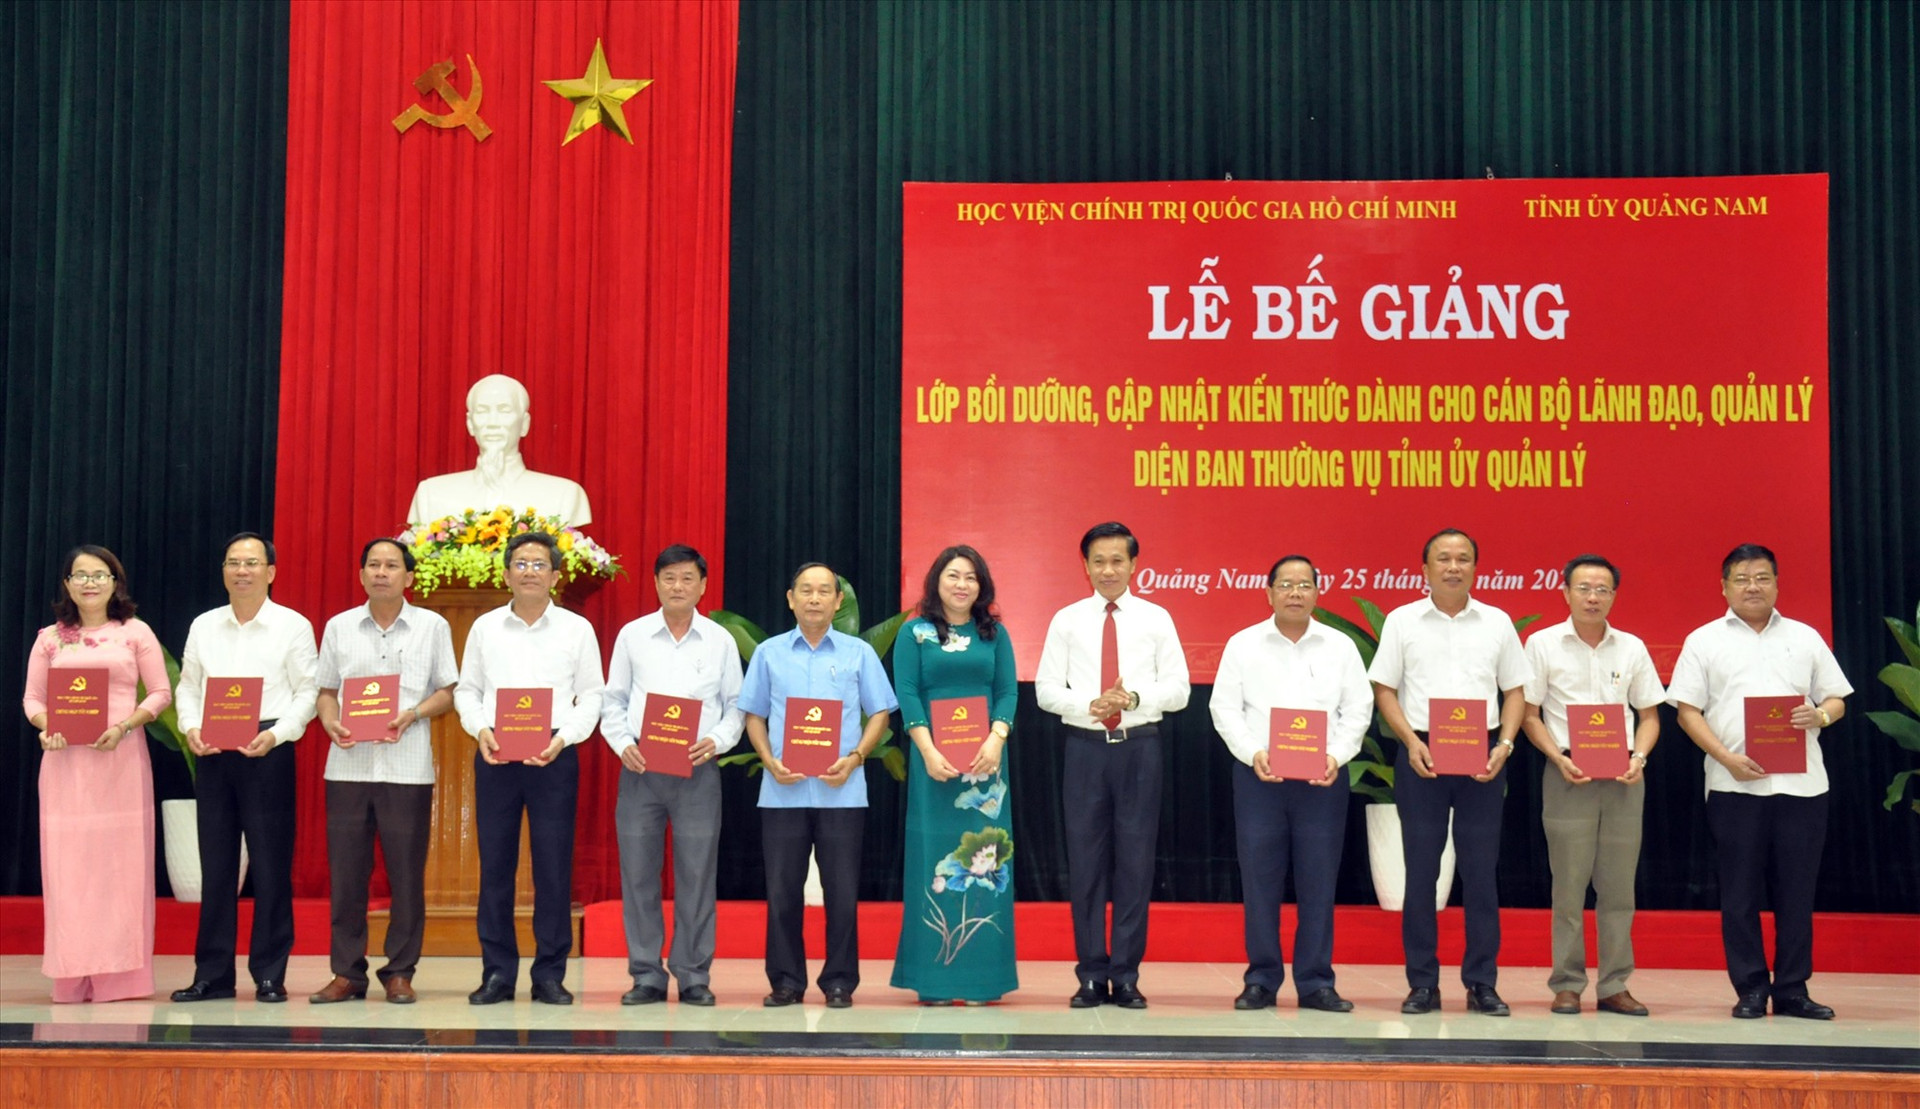 Lãnh đạo Học viện Chính trị quốc gia Hồ Chí Minh trao chứng nhận hoàn thành lớp bồi dưỡng, cập nhật kiến thức cho các học viên. Ảnh: N.ĐOAN